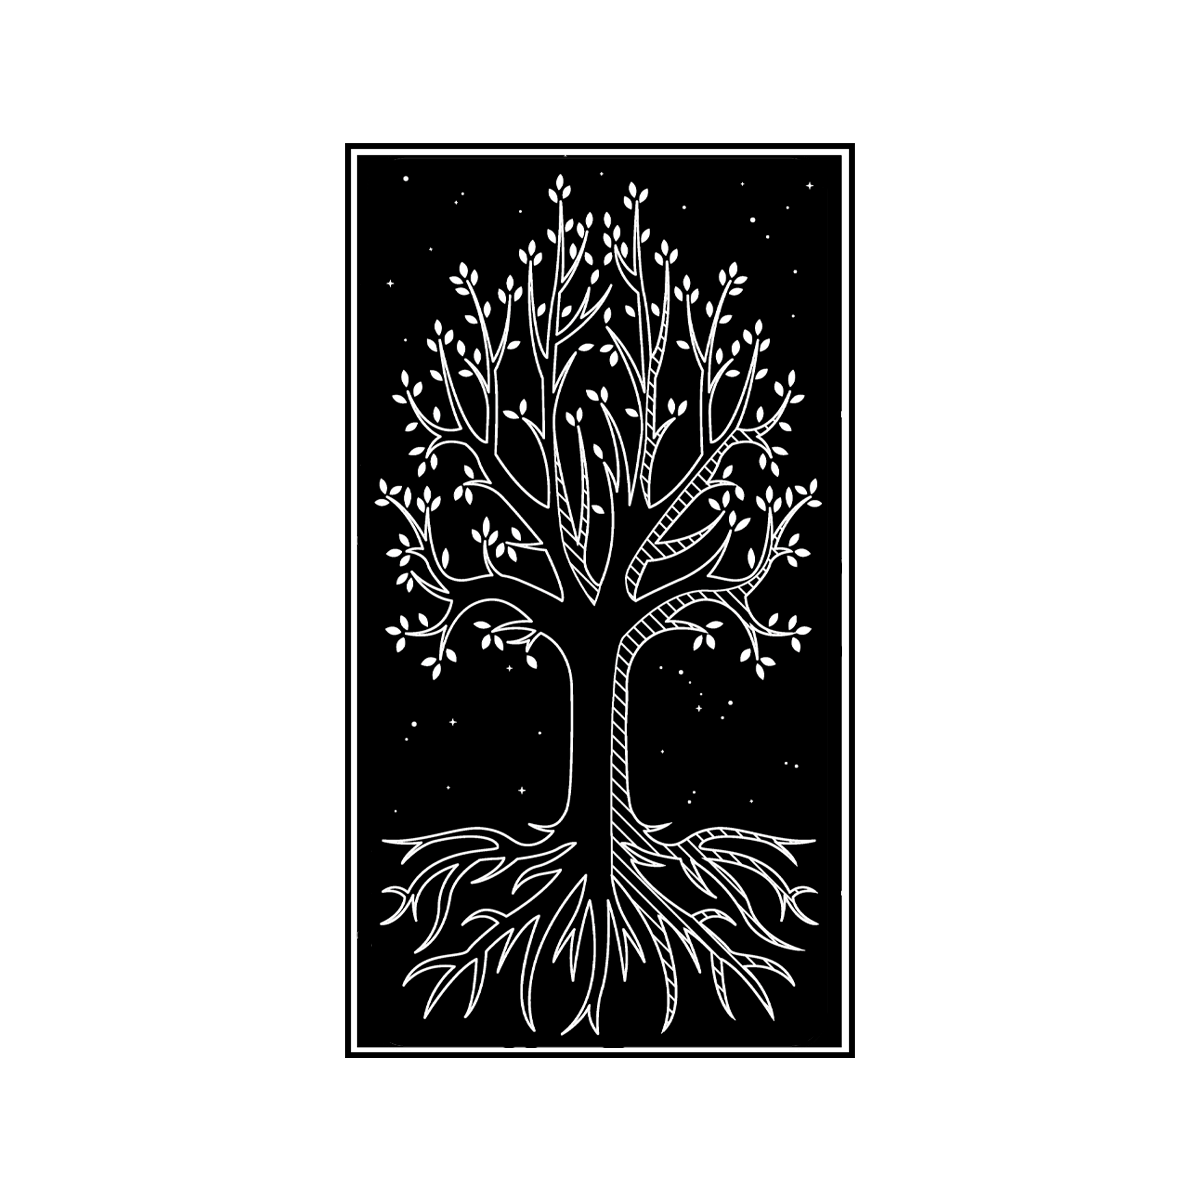 ☽ PIN | YGGDRASIL TREE